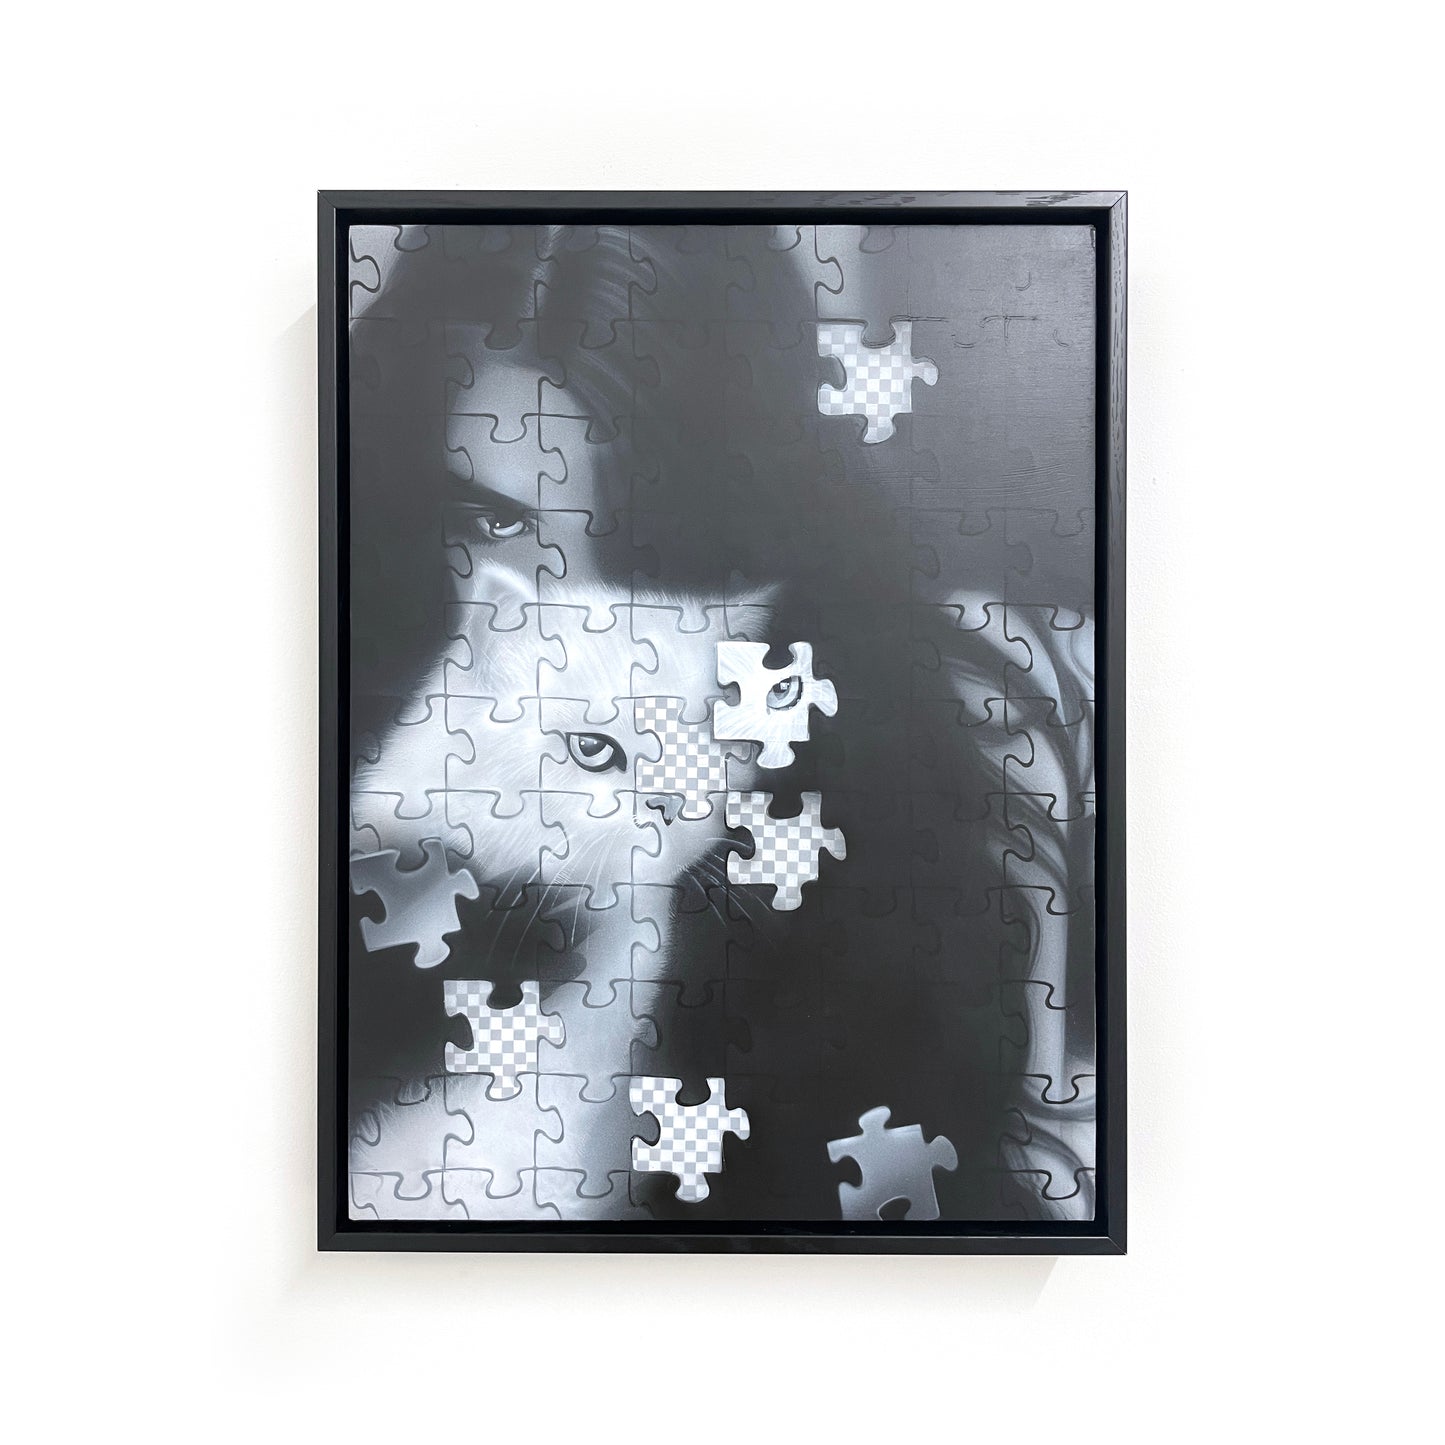 Adrian Contreras - Puzzled